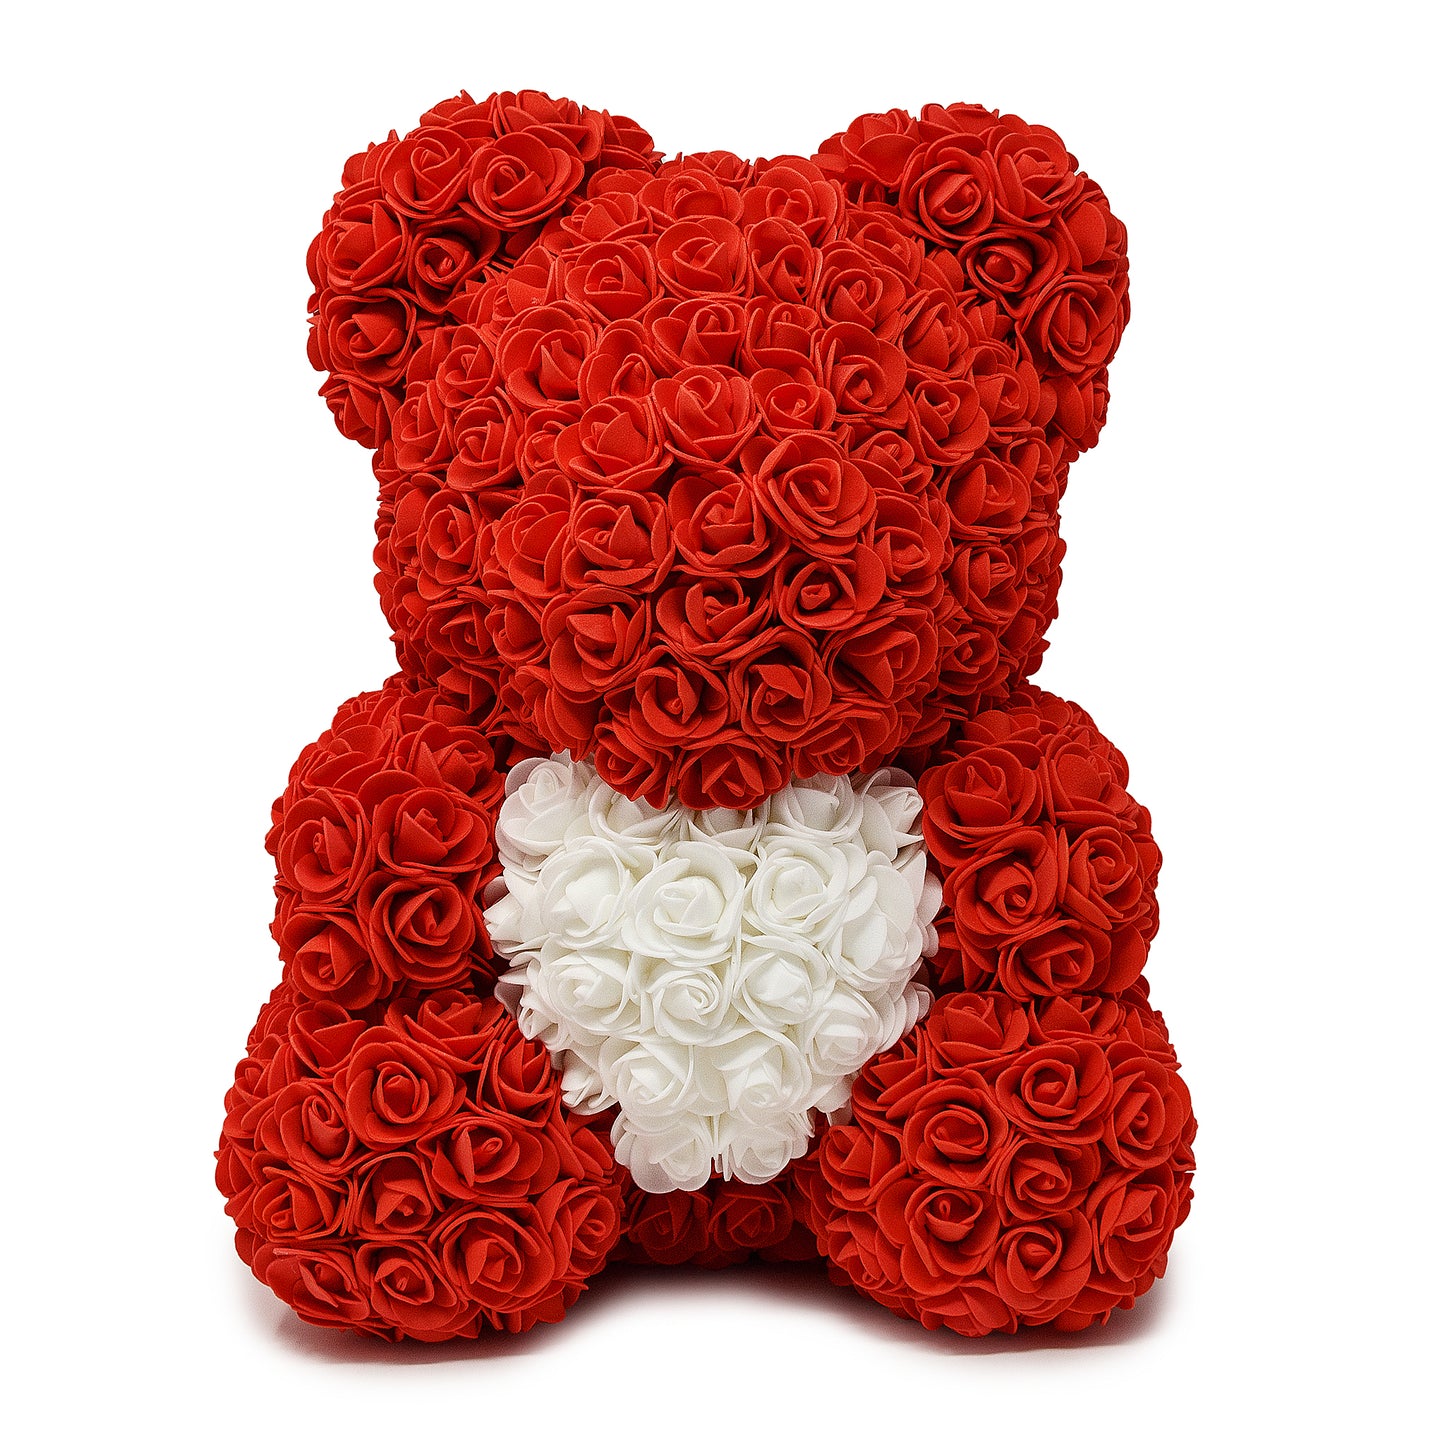 Red Rose Teddy Bear & White Heart -1